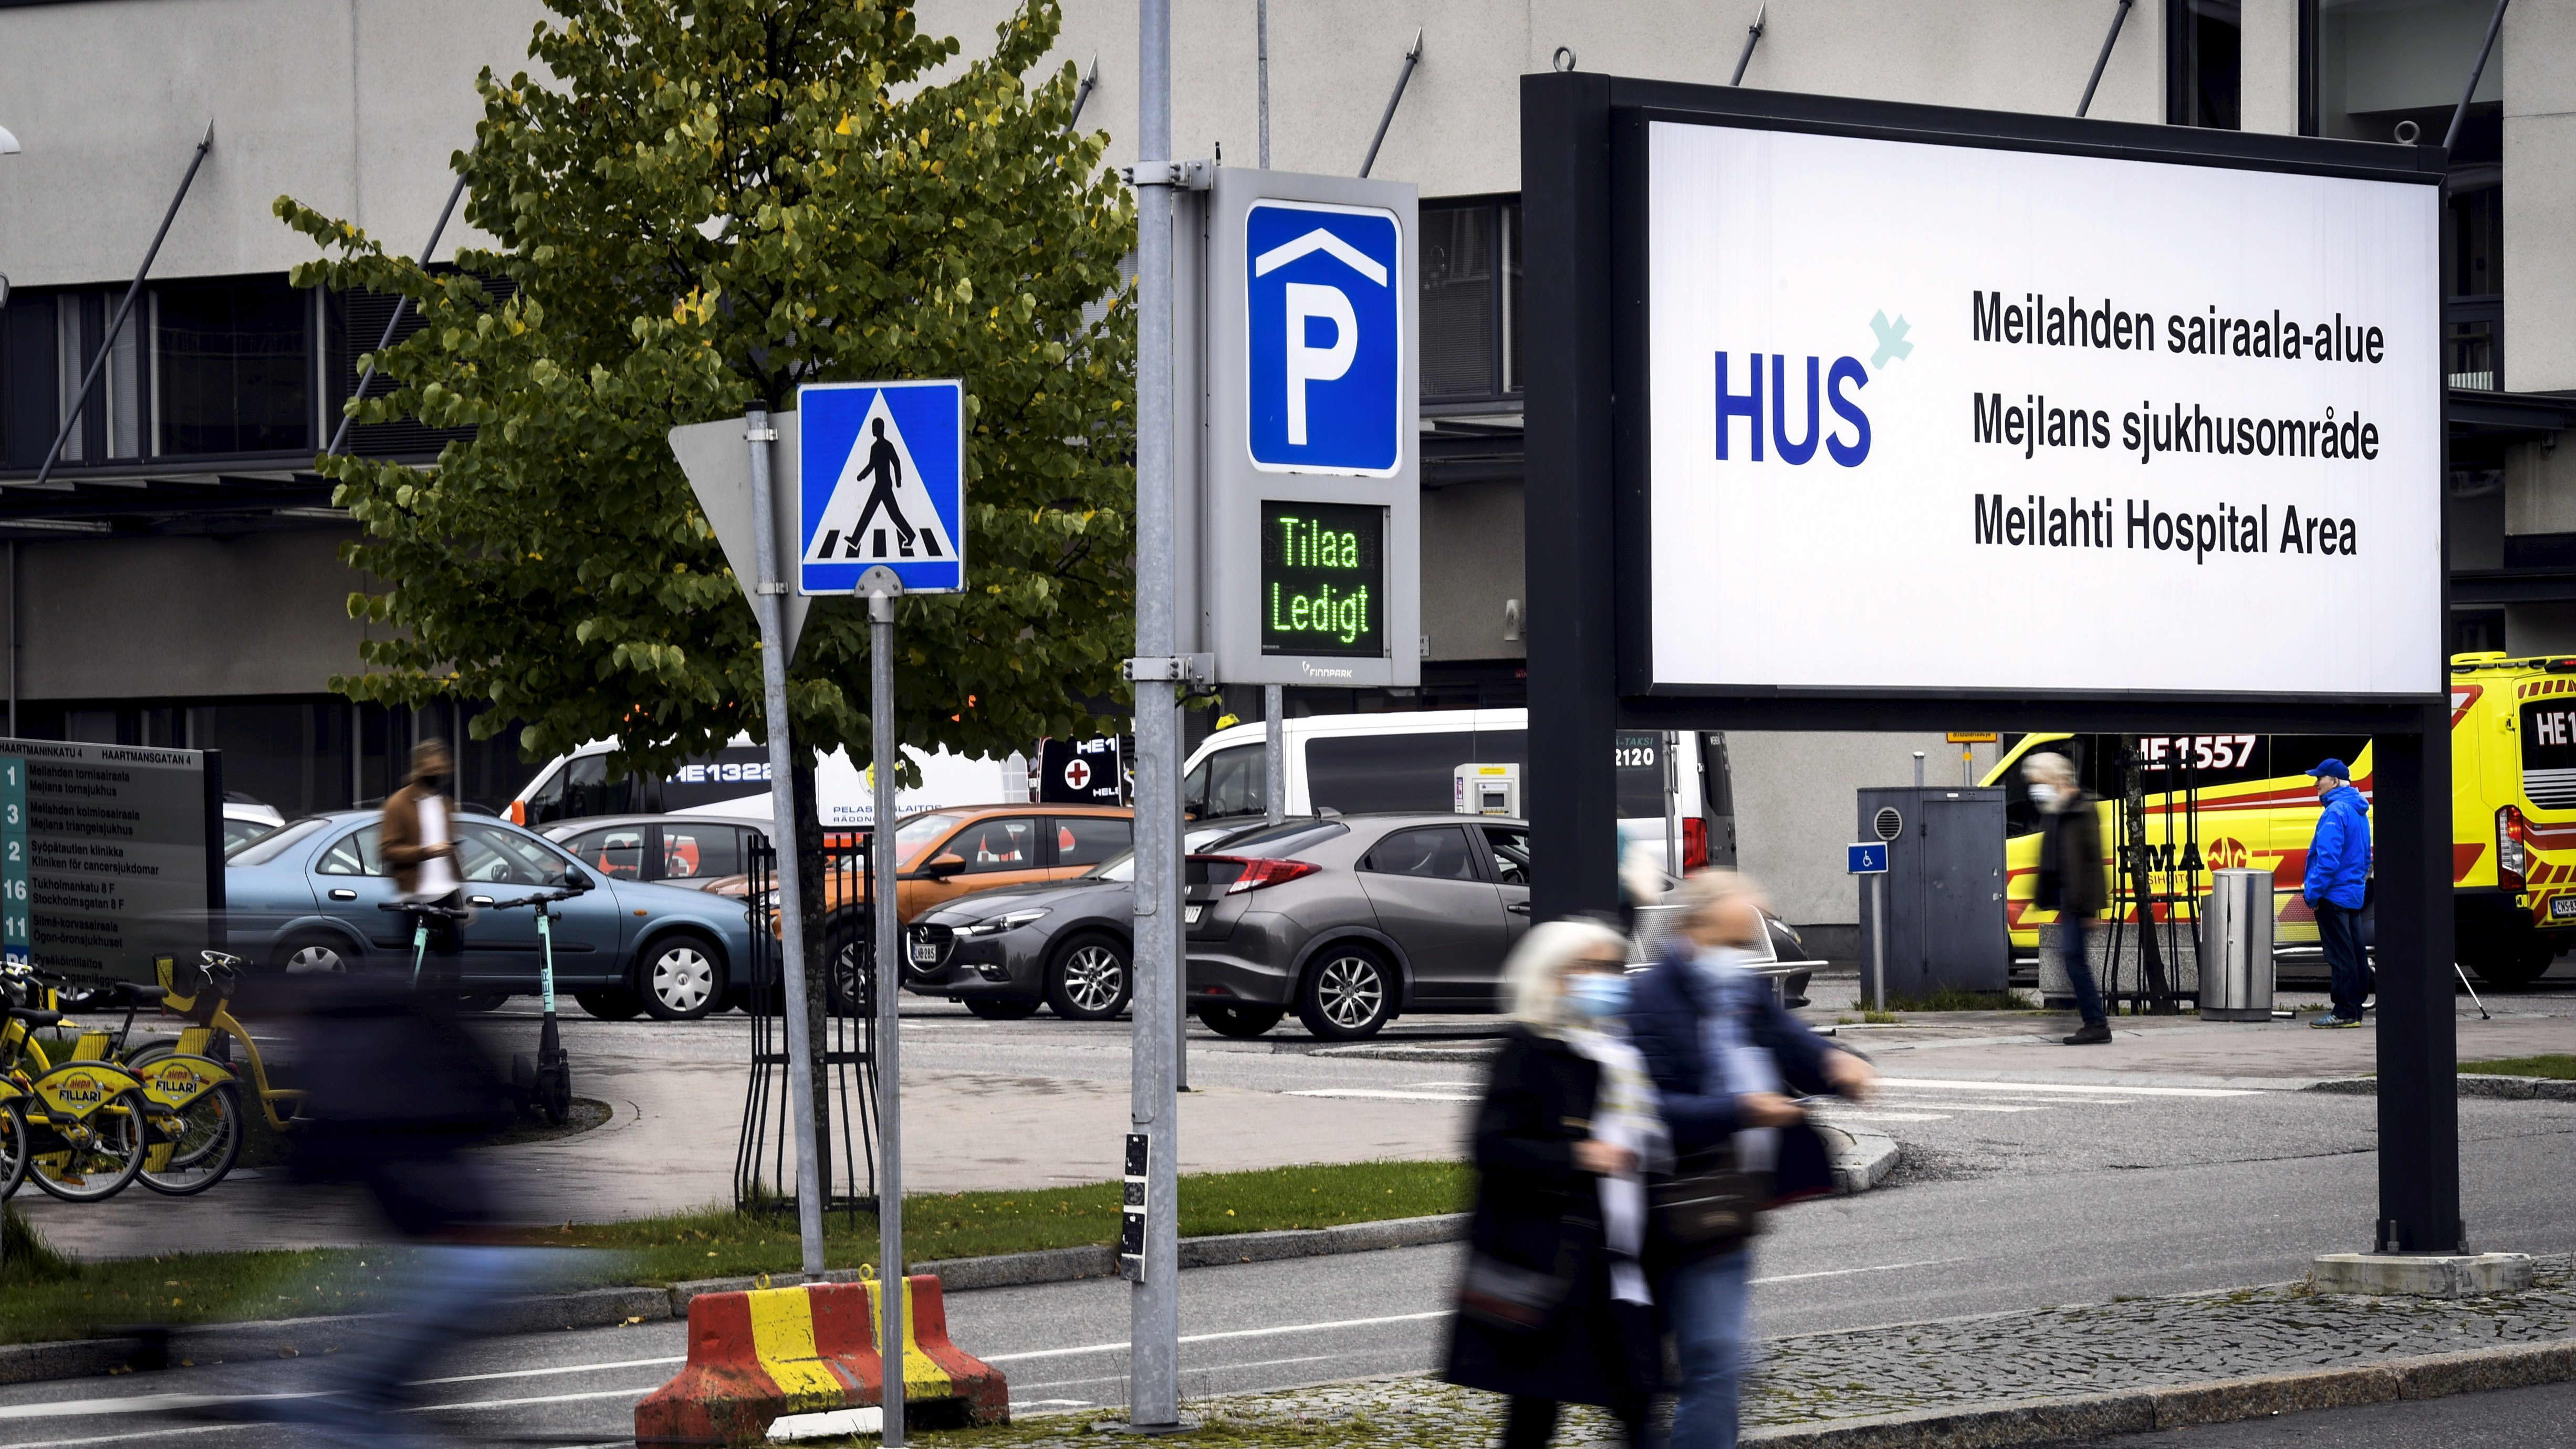 Helsingin ja Uudenmaan sairaanhoitopiirin HUS:in Meilahden sairaala-alue Helsingissä 7. lokakuuta 2020. 